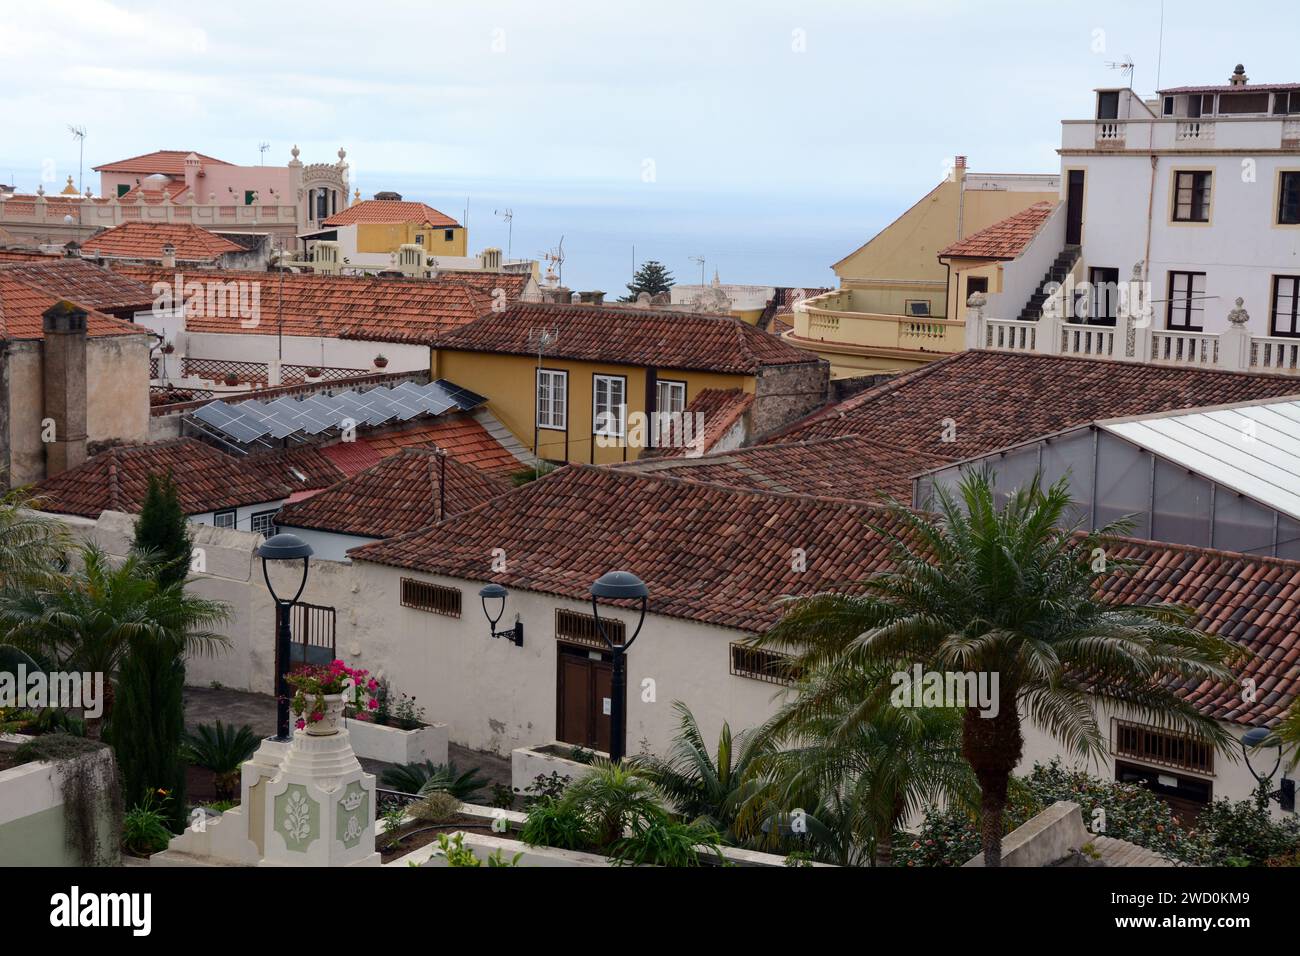 La vue vers l'océan sur les toits espagnols et les vieilles maisons coloniales et villas dans la ville de la Oratova, Tenerife, îles Canaries, Espagne. Banque D'Images